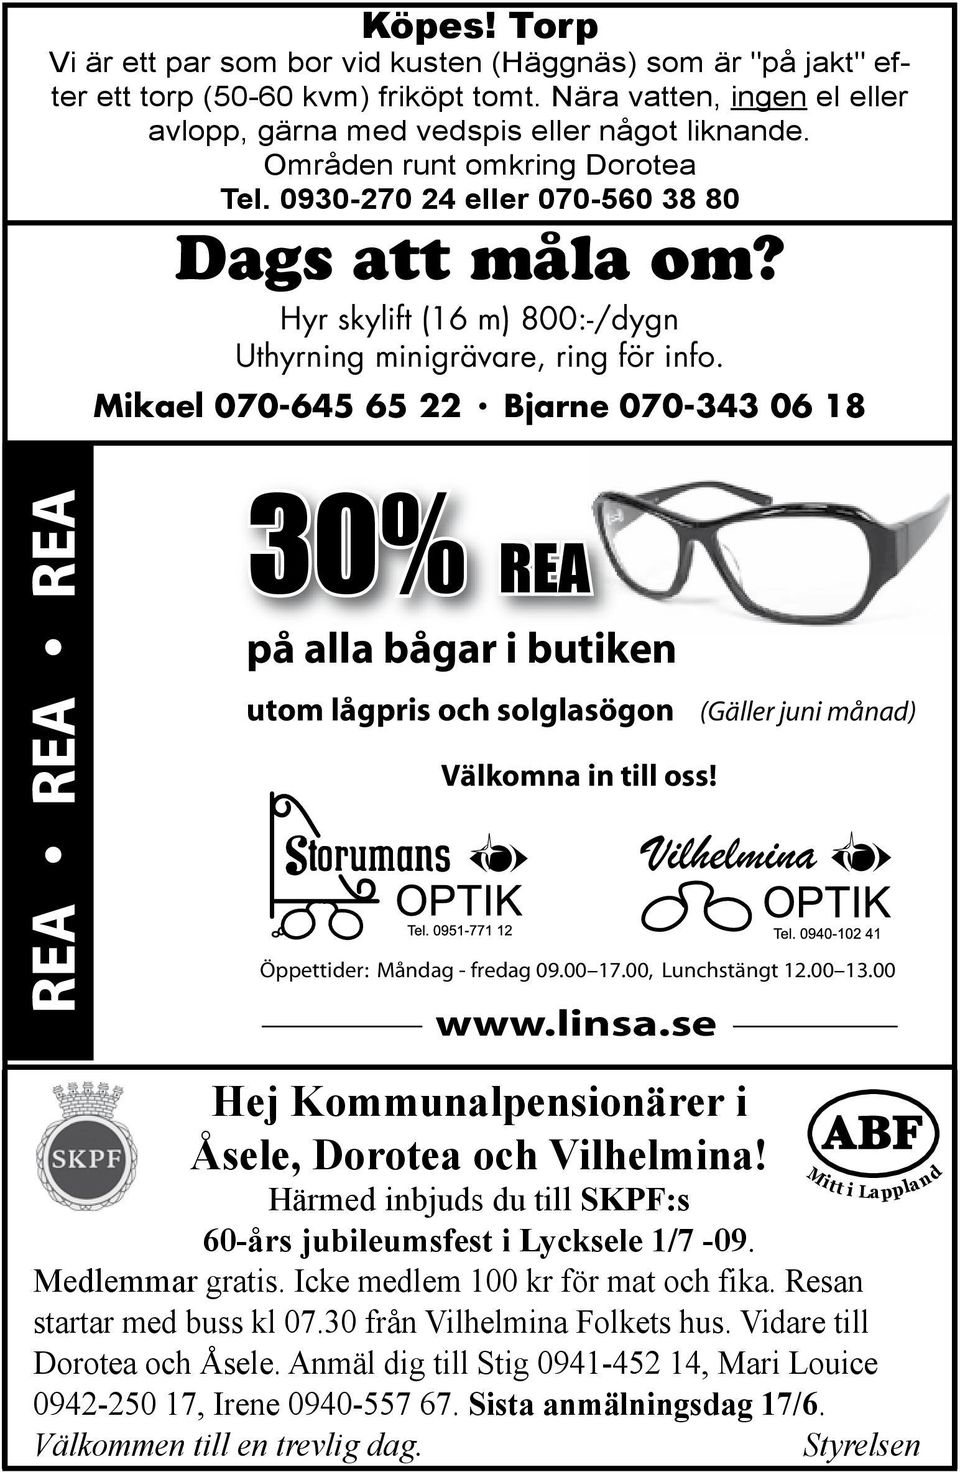 Bjarne 070-343 06 18 REA REA REA 30% REA på alla bågar i butiken utom lågpris och solglasögon (Gäller juni månad) Välkomna in till oss! Öppettider: Måndag - fredag 09.00 17.00, Lunchstängt 12.00 13.